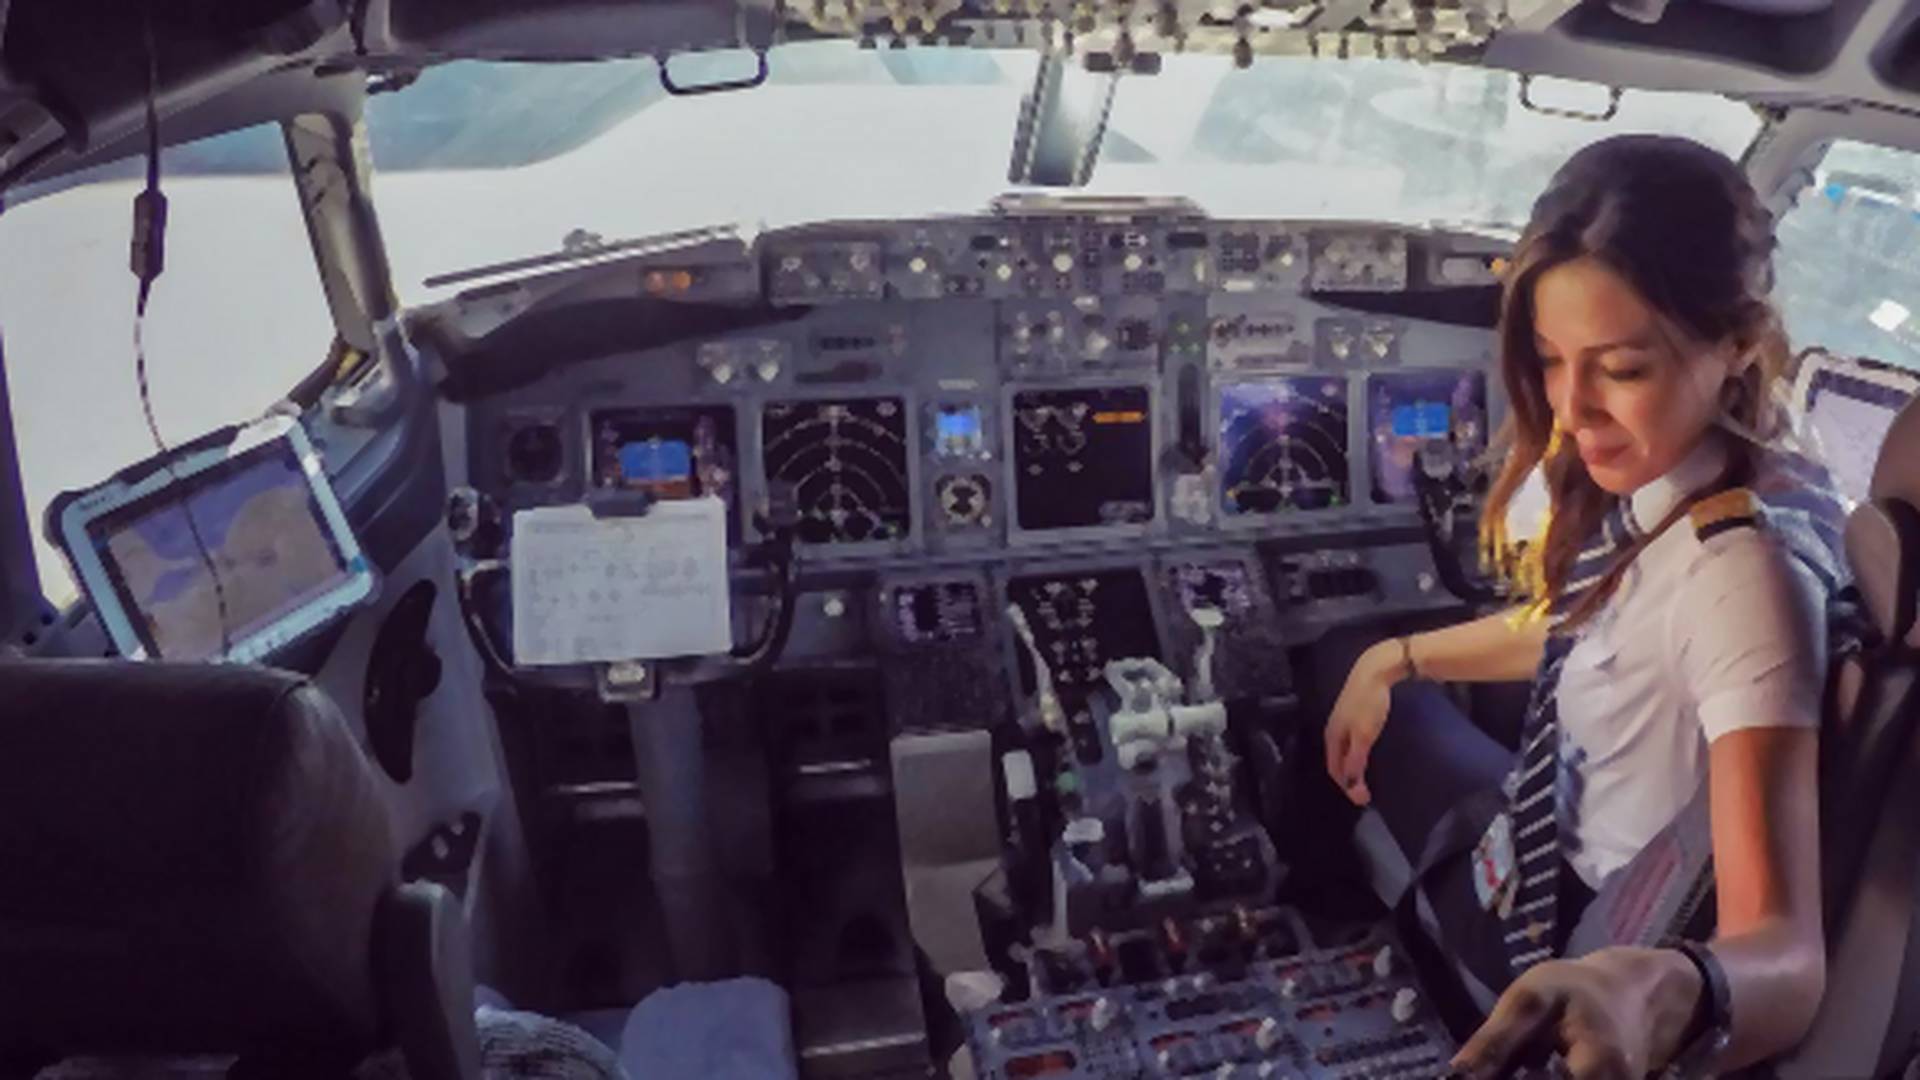 Pilotkinja postala Instagram senzacija zahvaljujući premoćnim selfijima iz kokpita